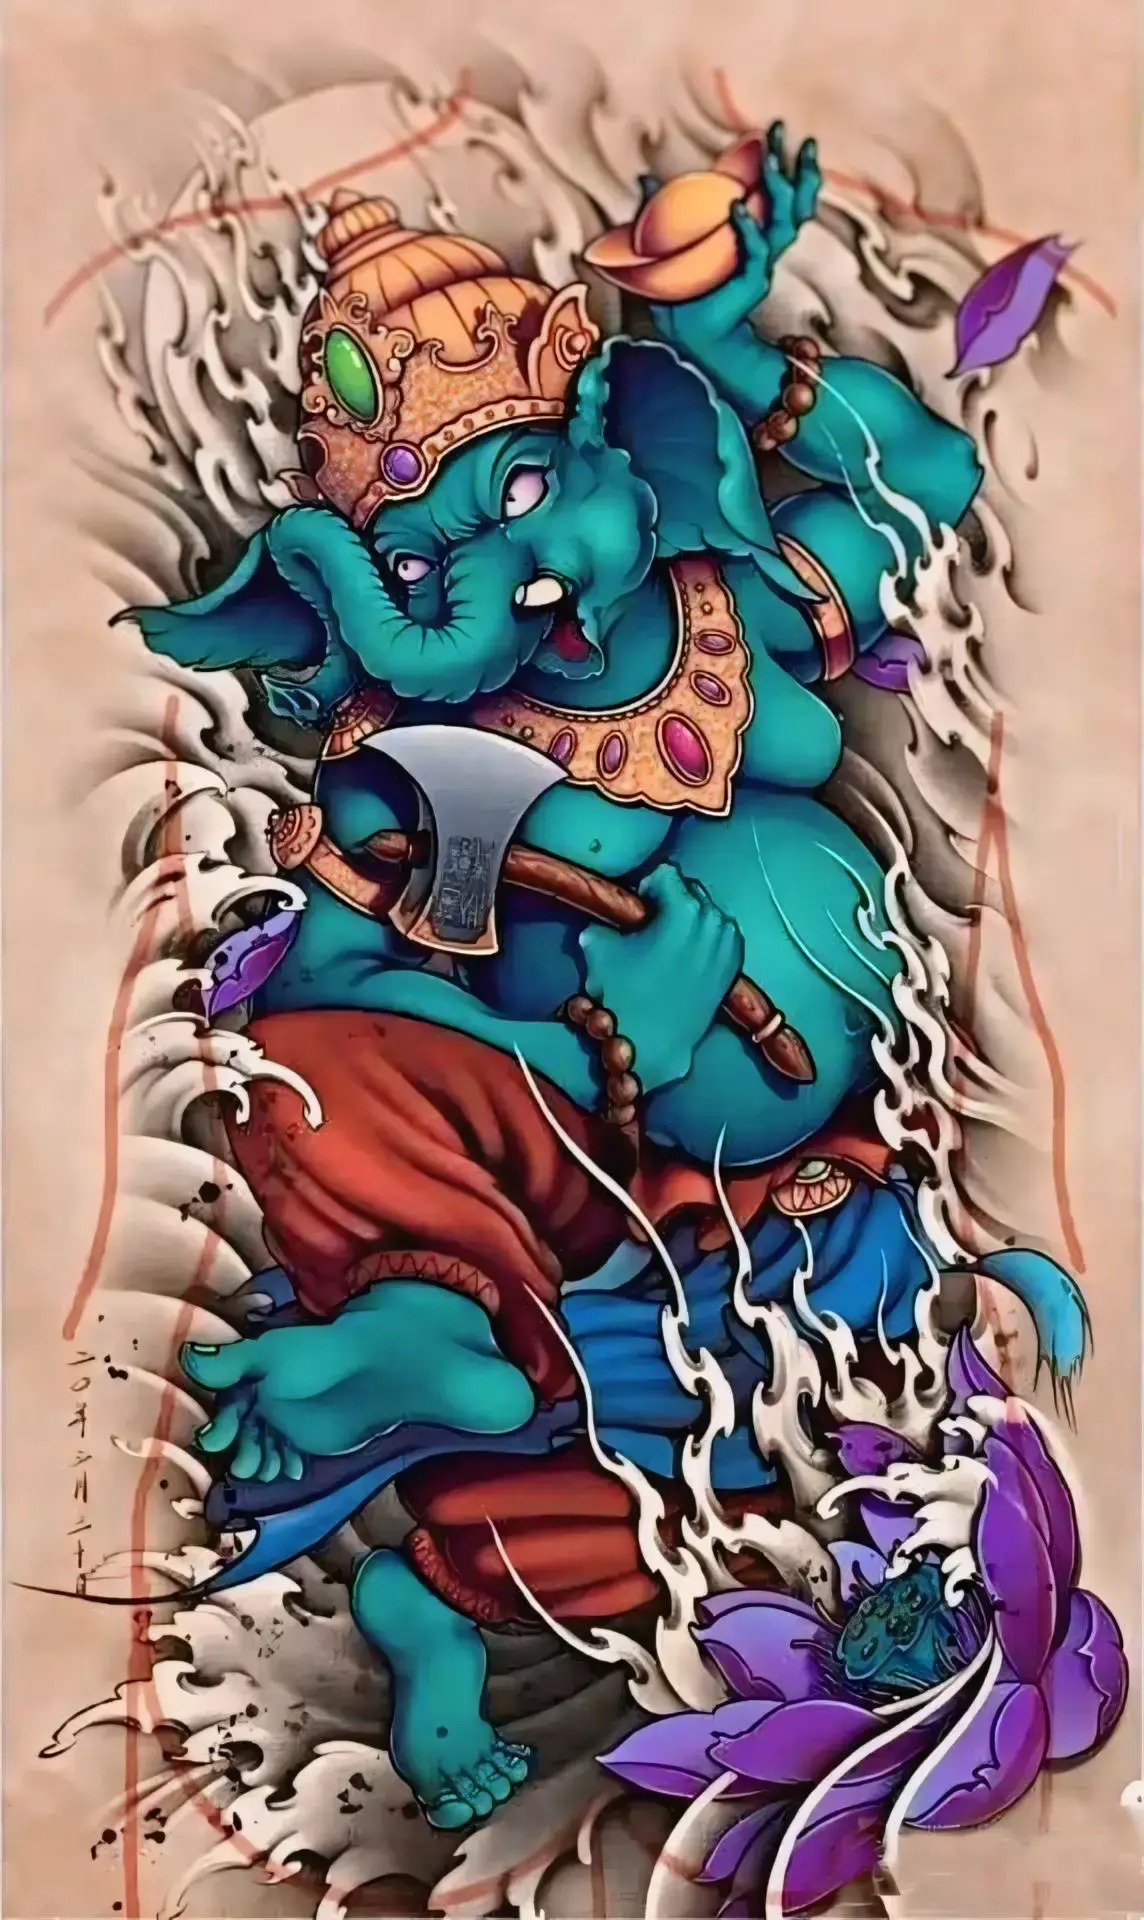 Thần voi :biểu tượng cho trí tuệ , kiên nhẫn và lòng nhân từ #ganesha #hinhxamdep #tattoo #xuhuong #mauhinhxam 